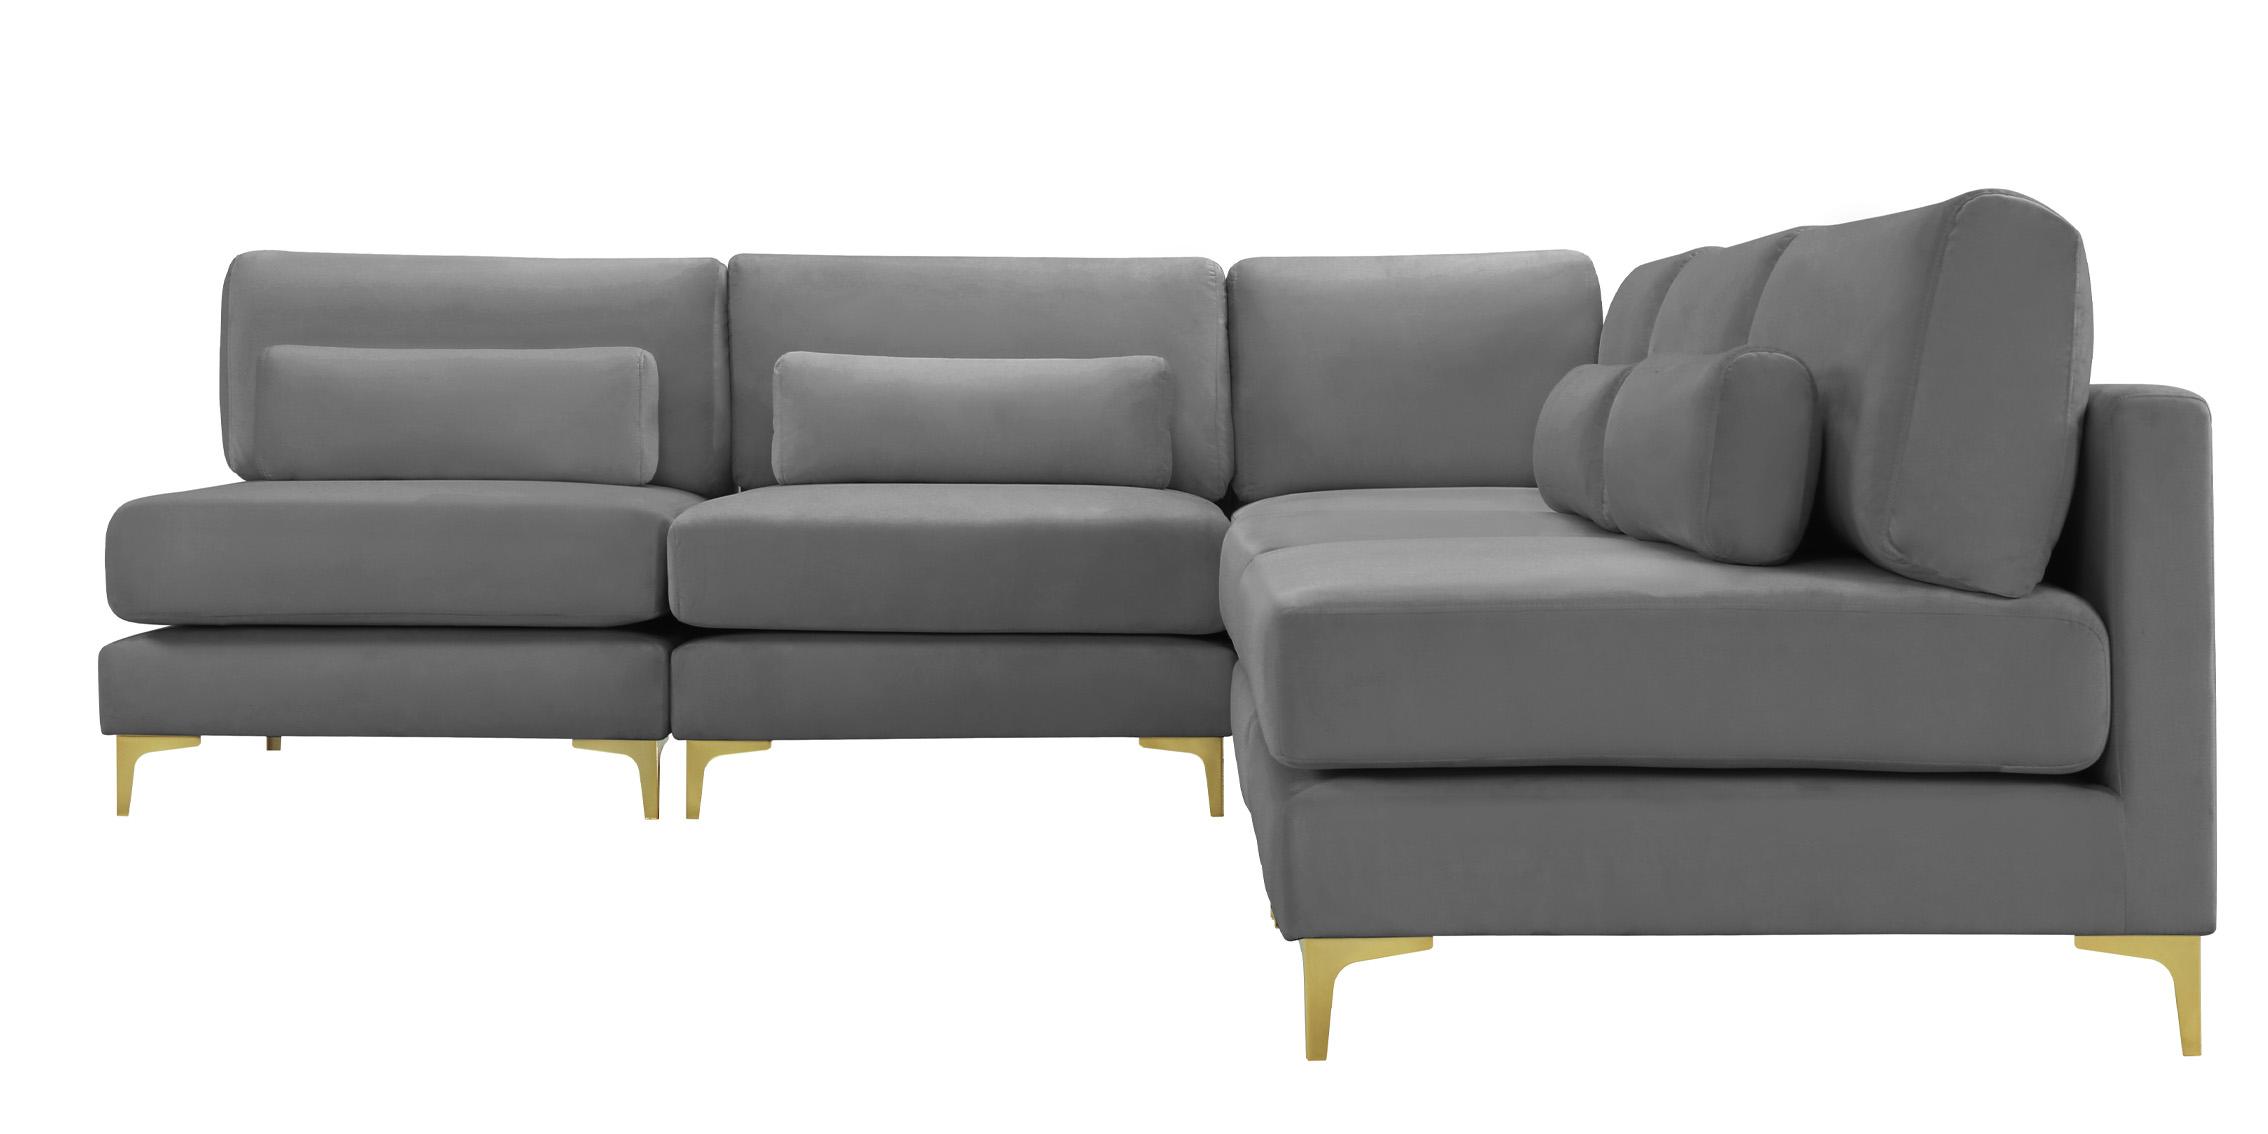 

    
Meridian Furniture JULIA 605Grey-Sec5B Modular Sectional Sofa Gray 605Grey-Sec5B
